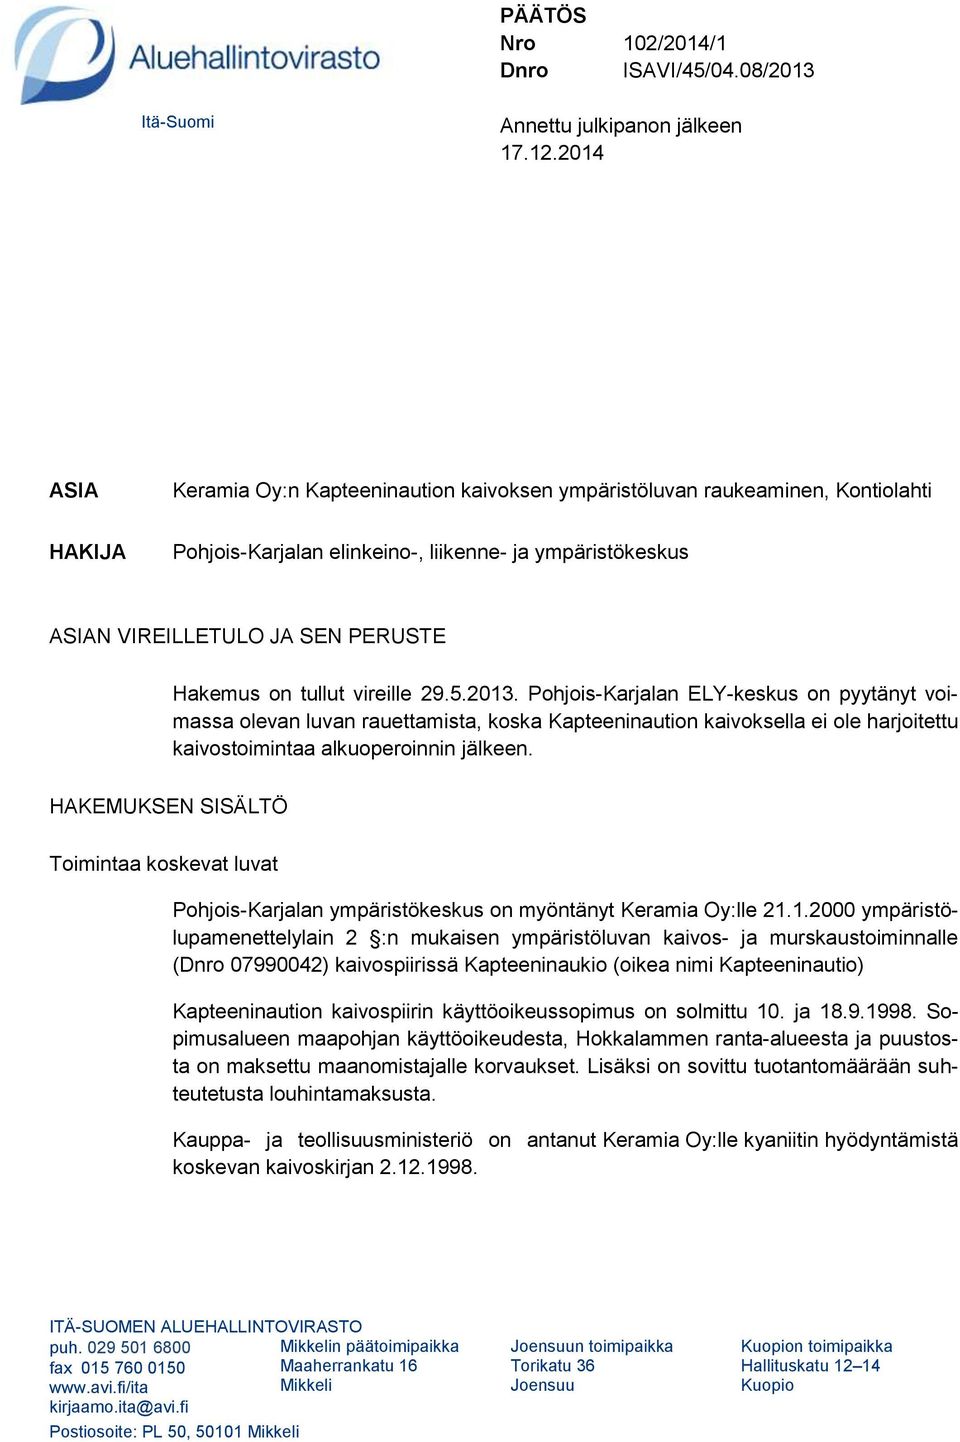 tullut vireille 29.5.2013. Pohjois-Karjalan ELY-keskus on pyytänyt voimassa olevan luvan rauettamista, koska Kapteeninaution kaivoksella ei ole harjoitettu kaivostoimintaa alkuoperoinnin jälkeen.